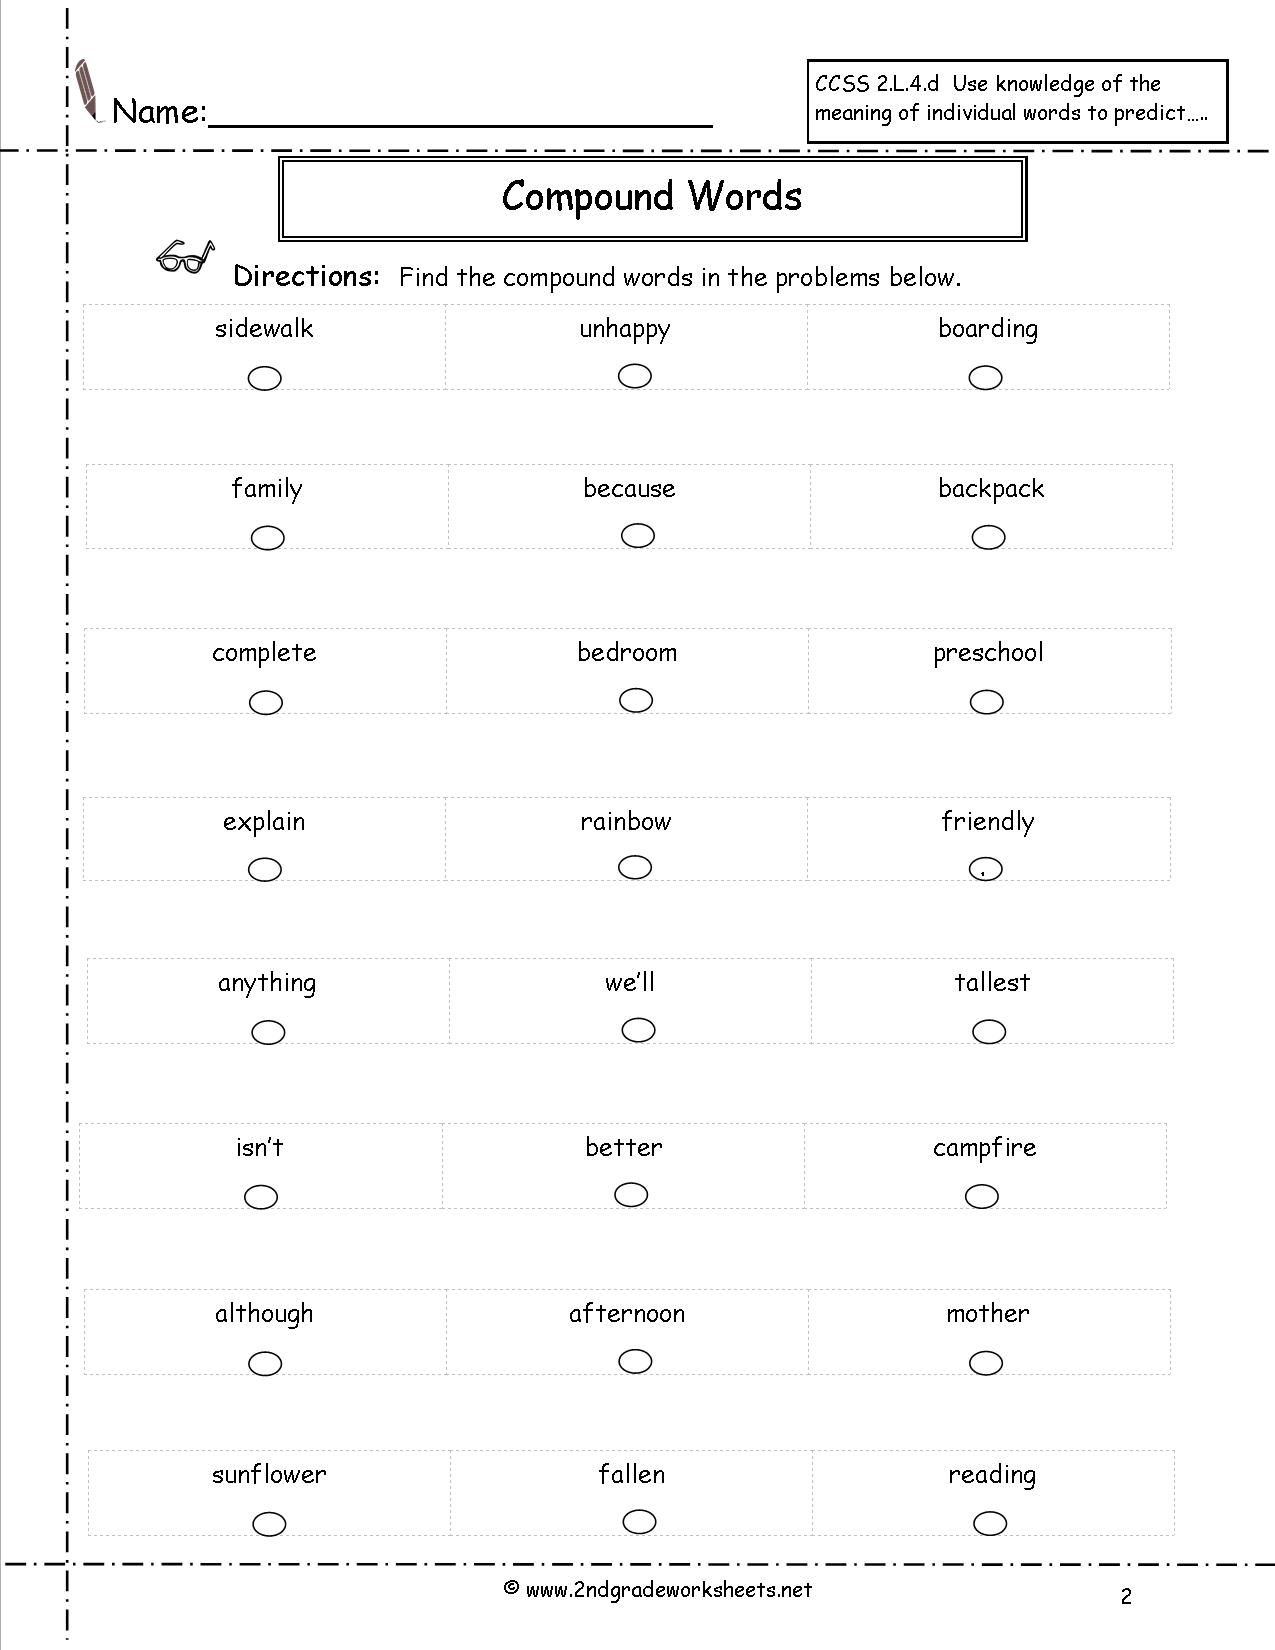 Compound Words Worksheet Grade 2 Image